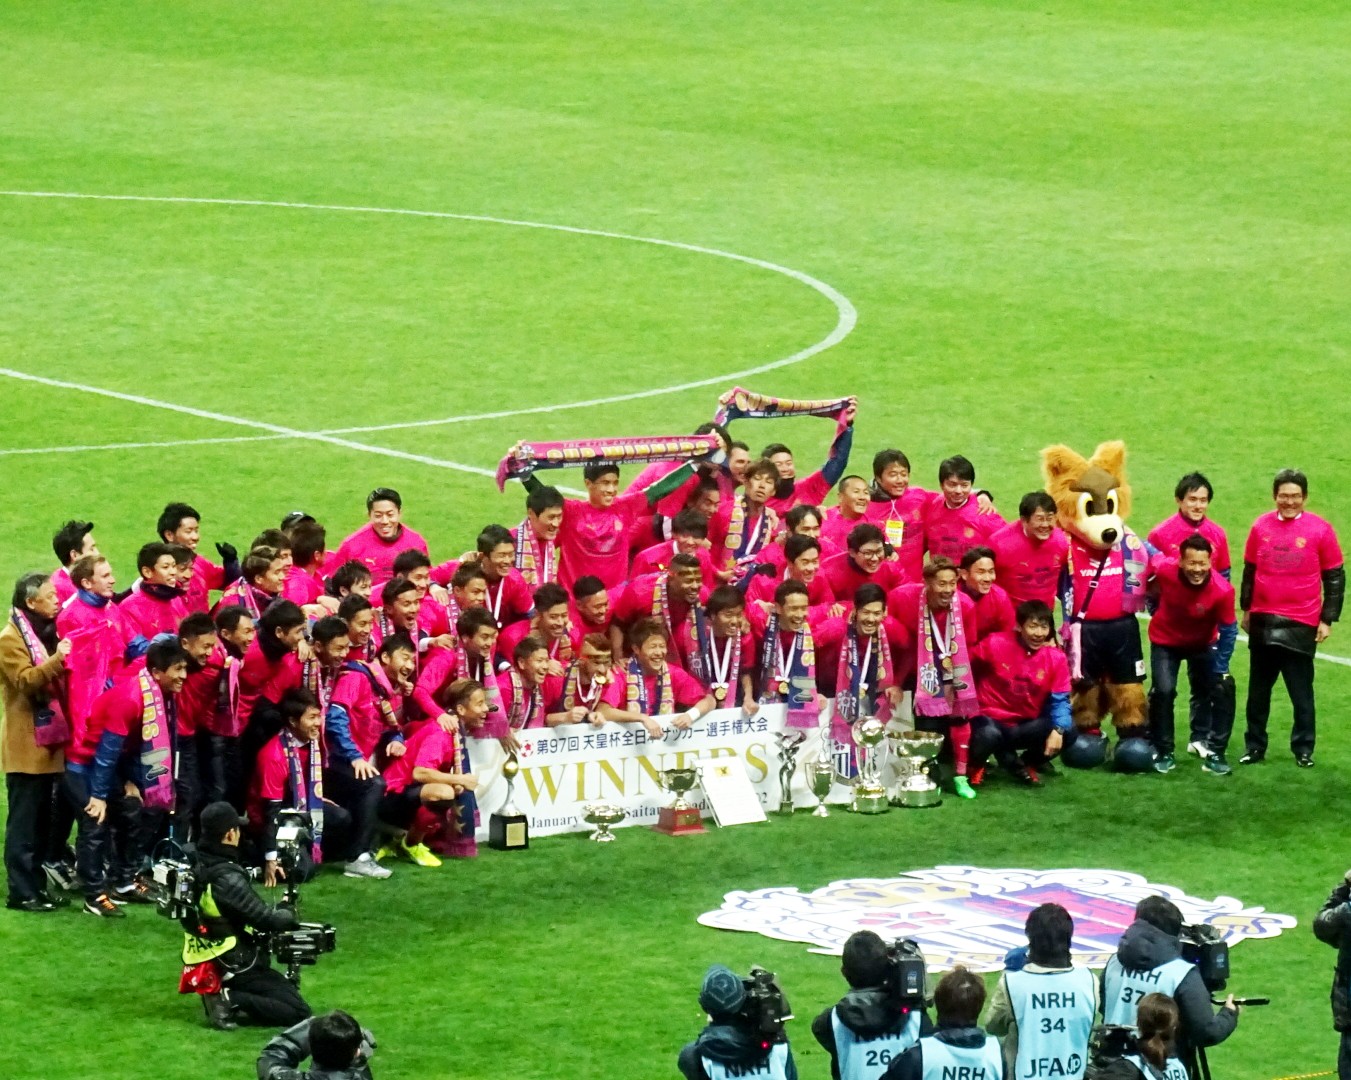 第97回 天皇杯 全日本サッカー選手権 決勝 セレッソ大阪 Vs 横浜fマリノス